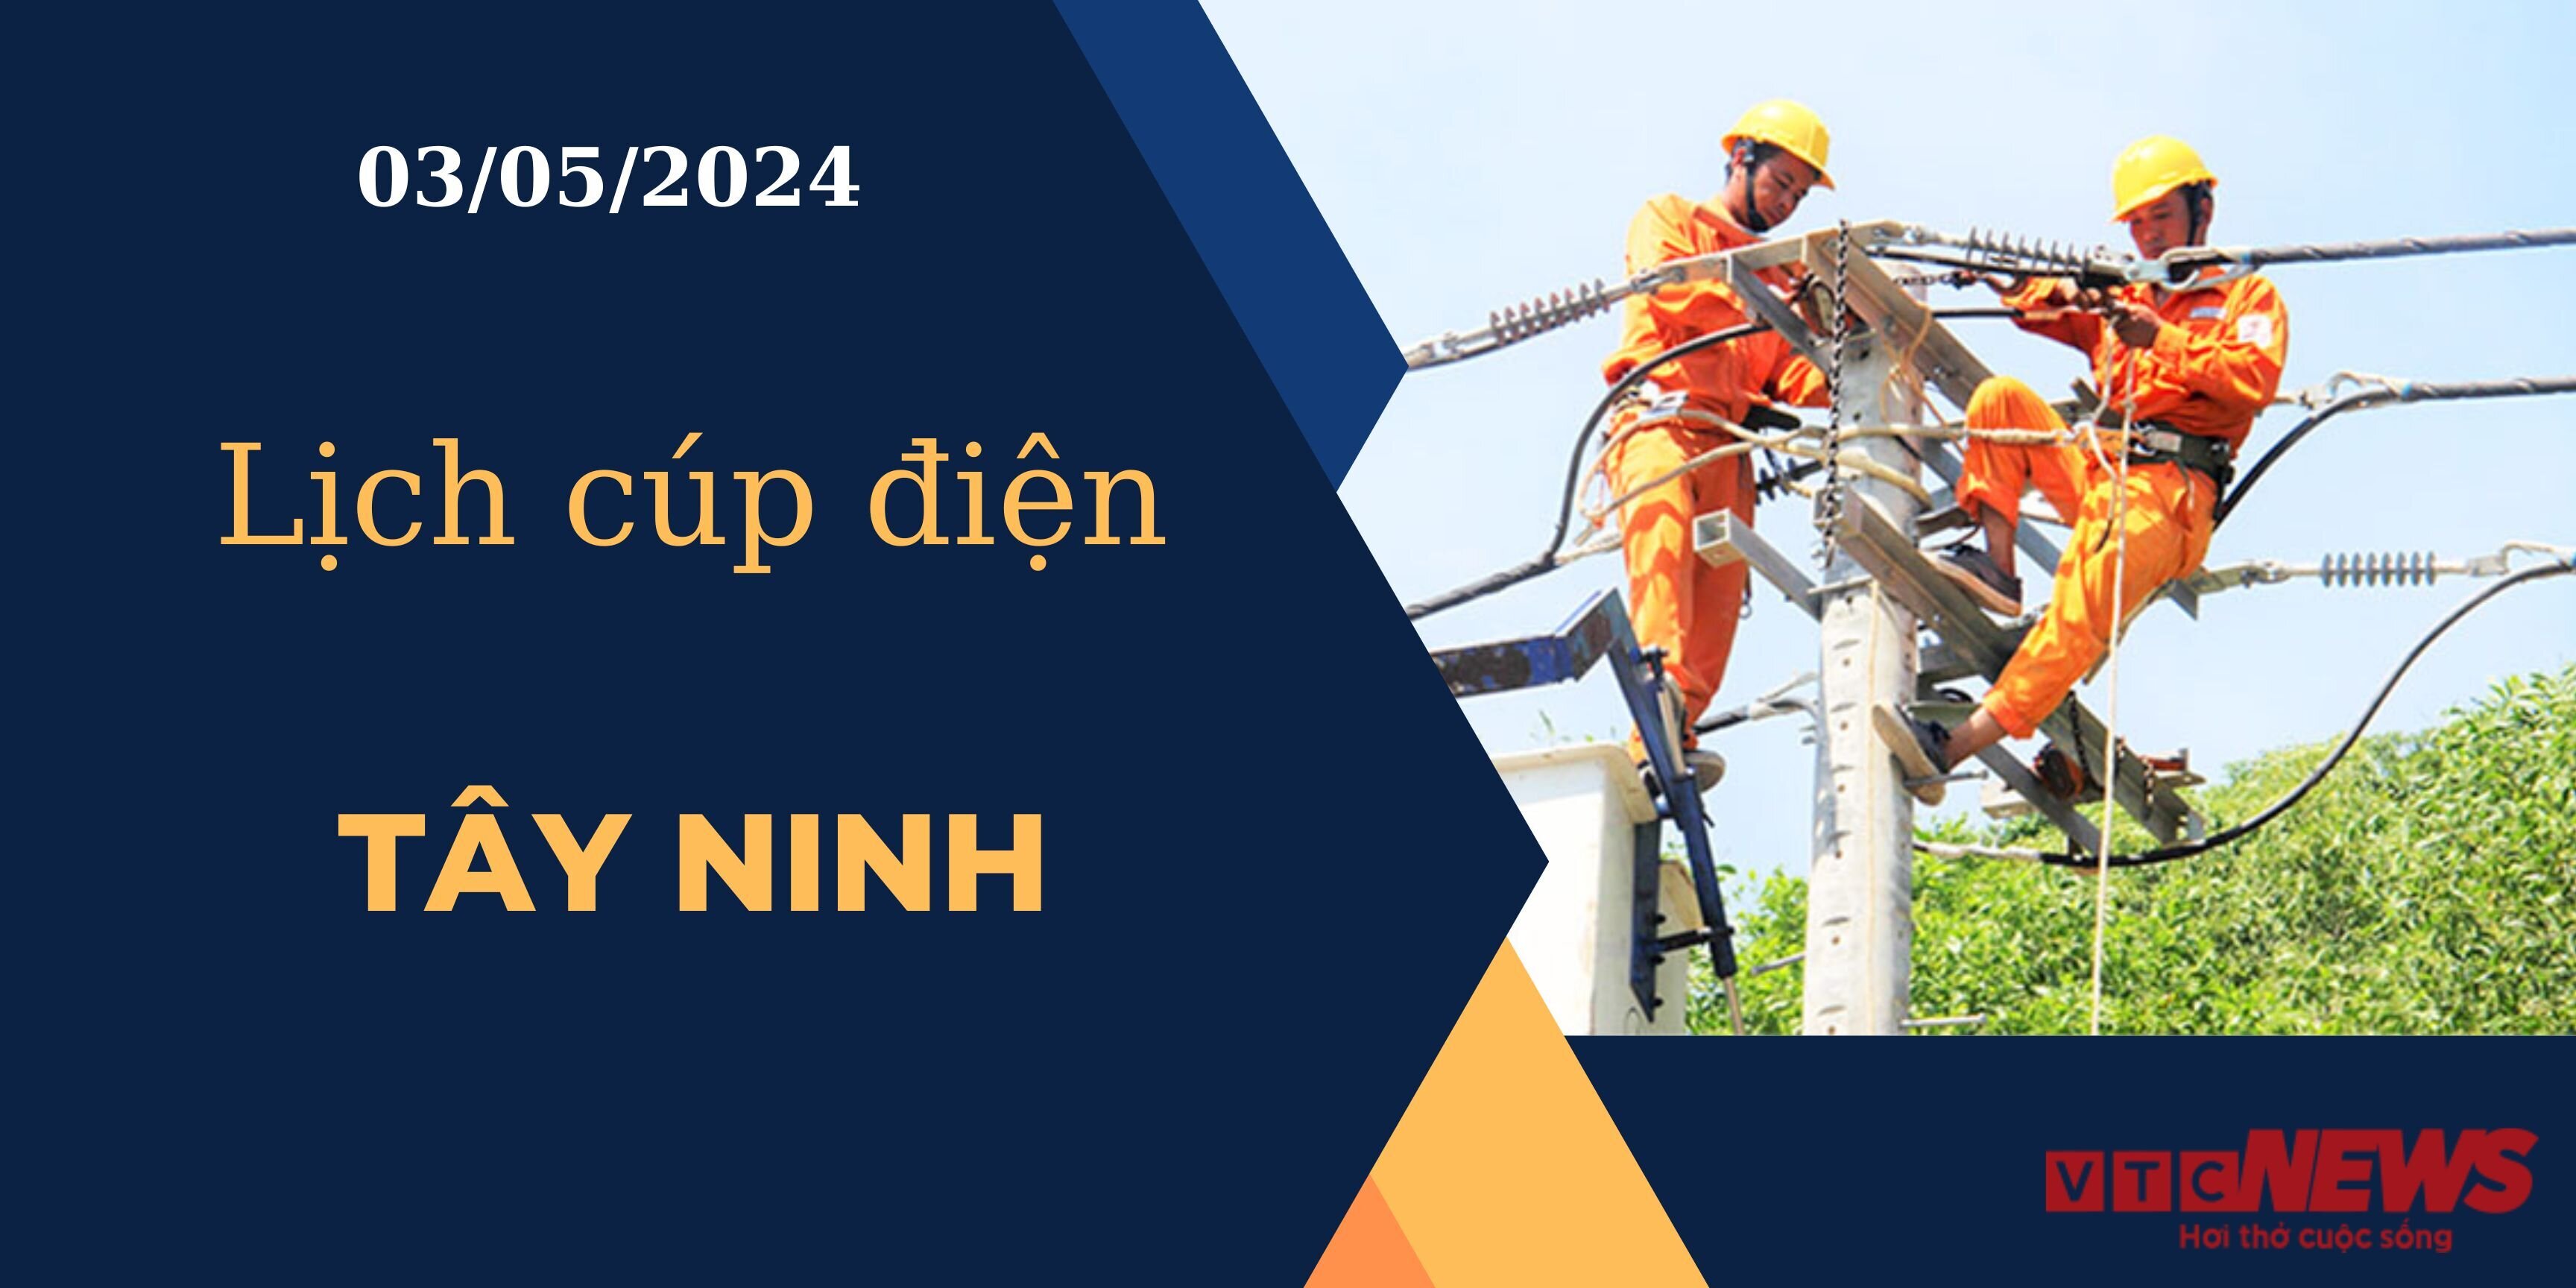 Lịch cúp điện hôm nay ngày 03/05/2024 tại Tây Ninh